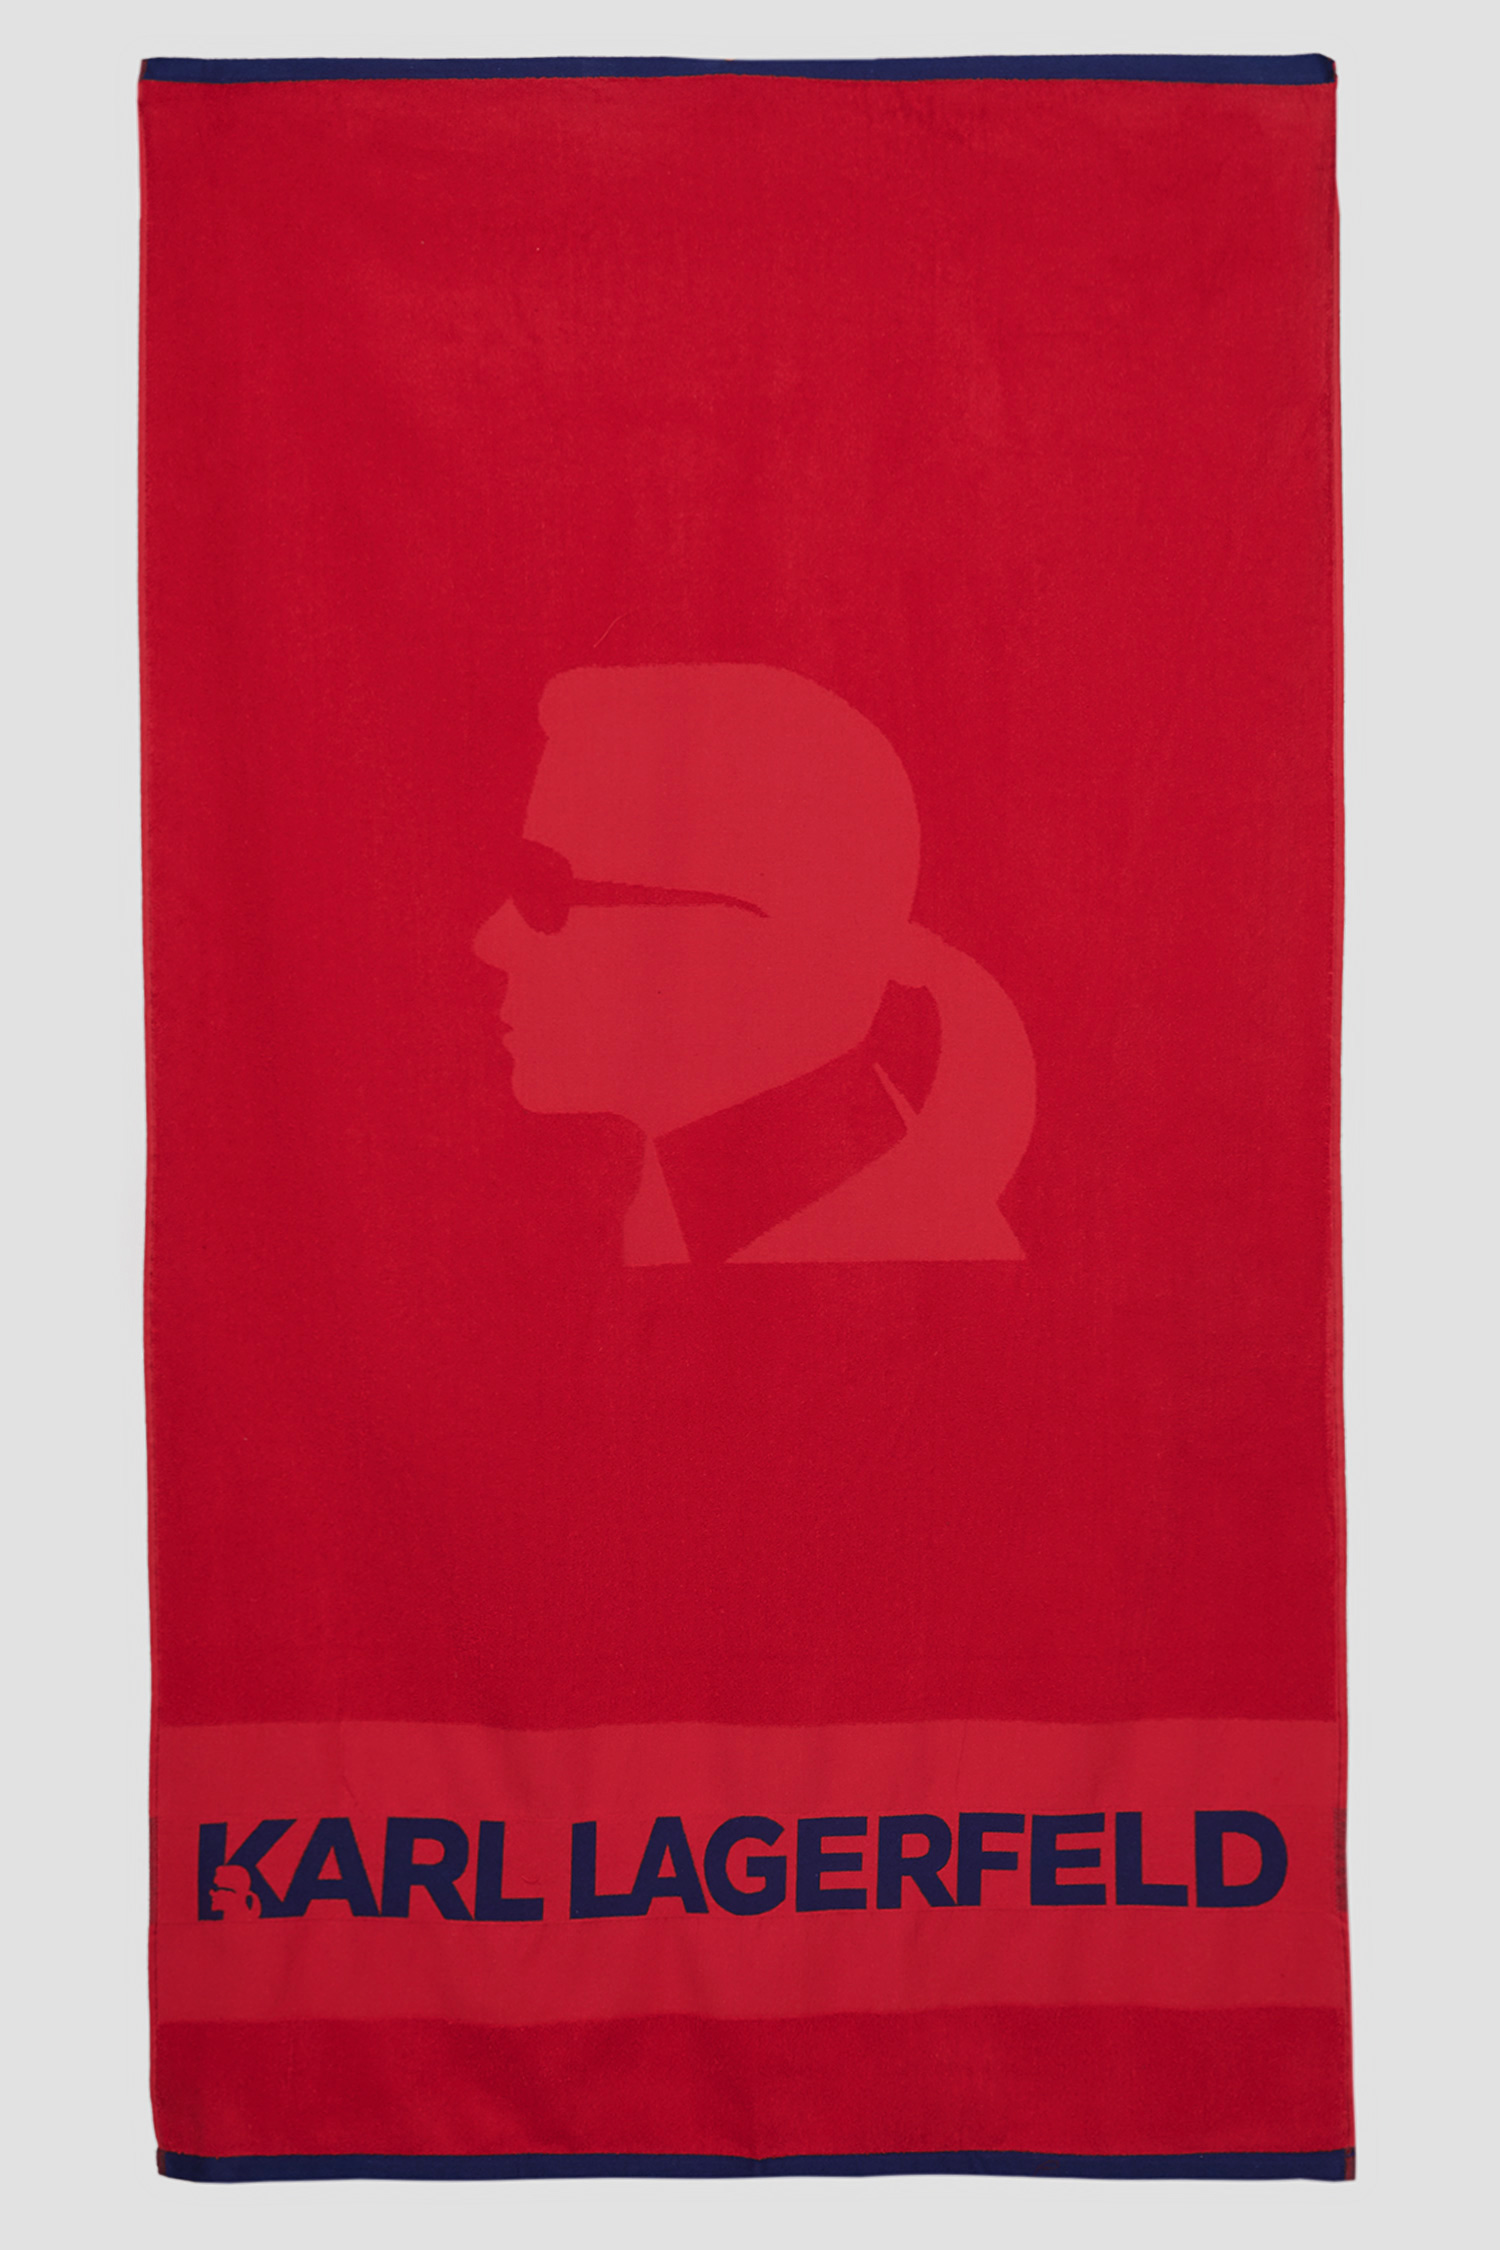 Червоний пляжний рушник Karl Lagerfeld KL20TW01;RED